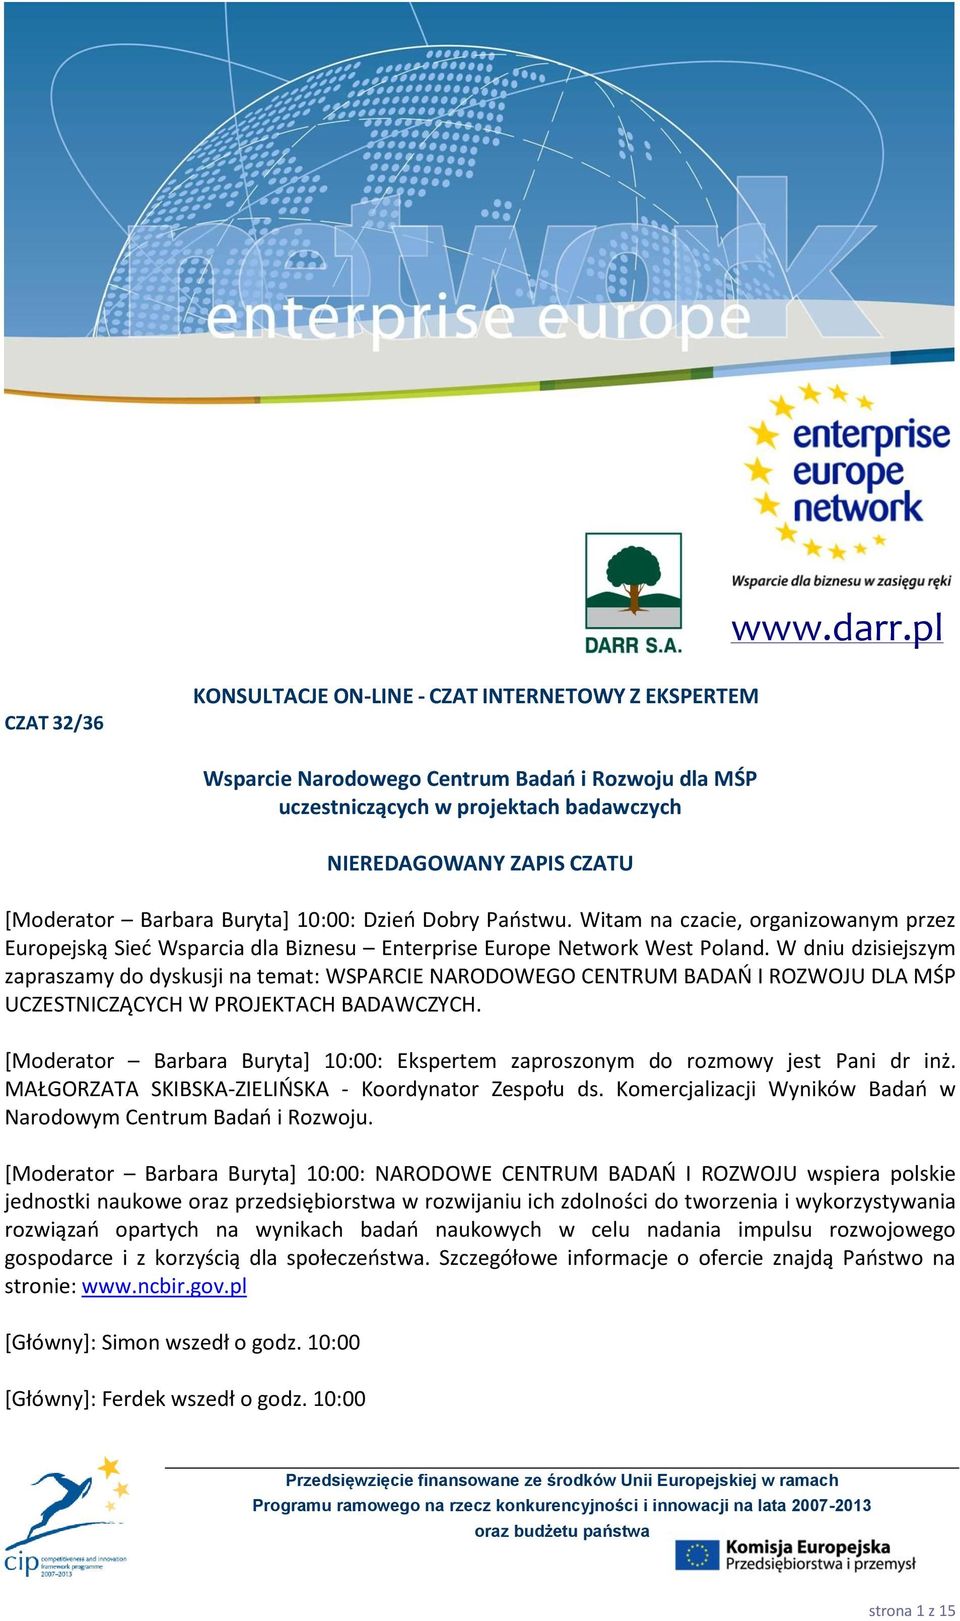 Barbara Buryta+ 10:00: Dzieo Dobry Paostwu. Witam na czacie, organizowanym przez Europejską Sied Wsparcia dla Biznesu Enterprise Europe Network West Poland.